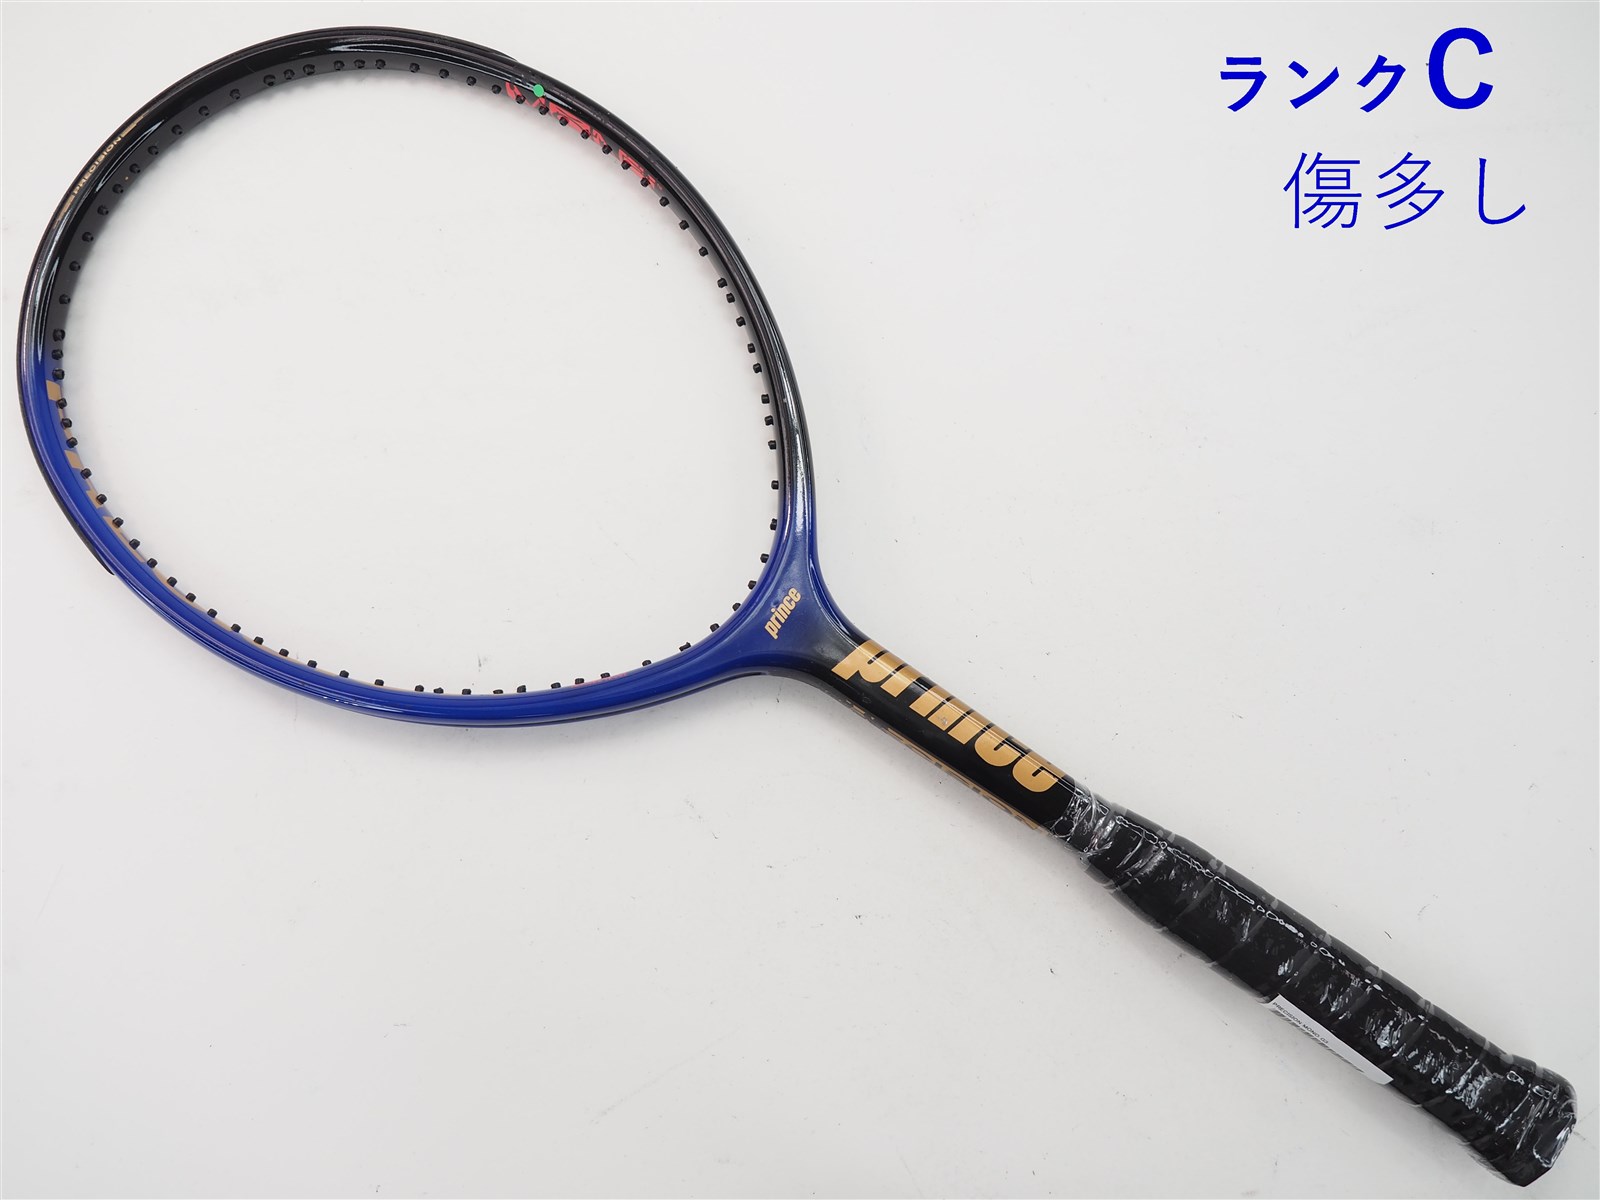 テニスラケット G216000円でお願いします